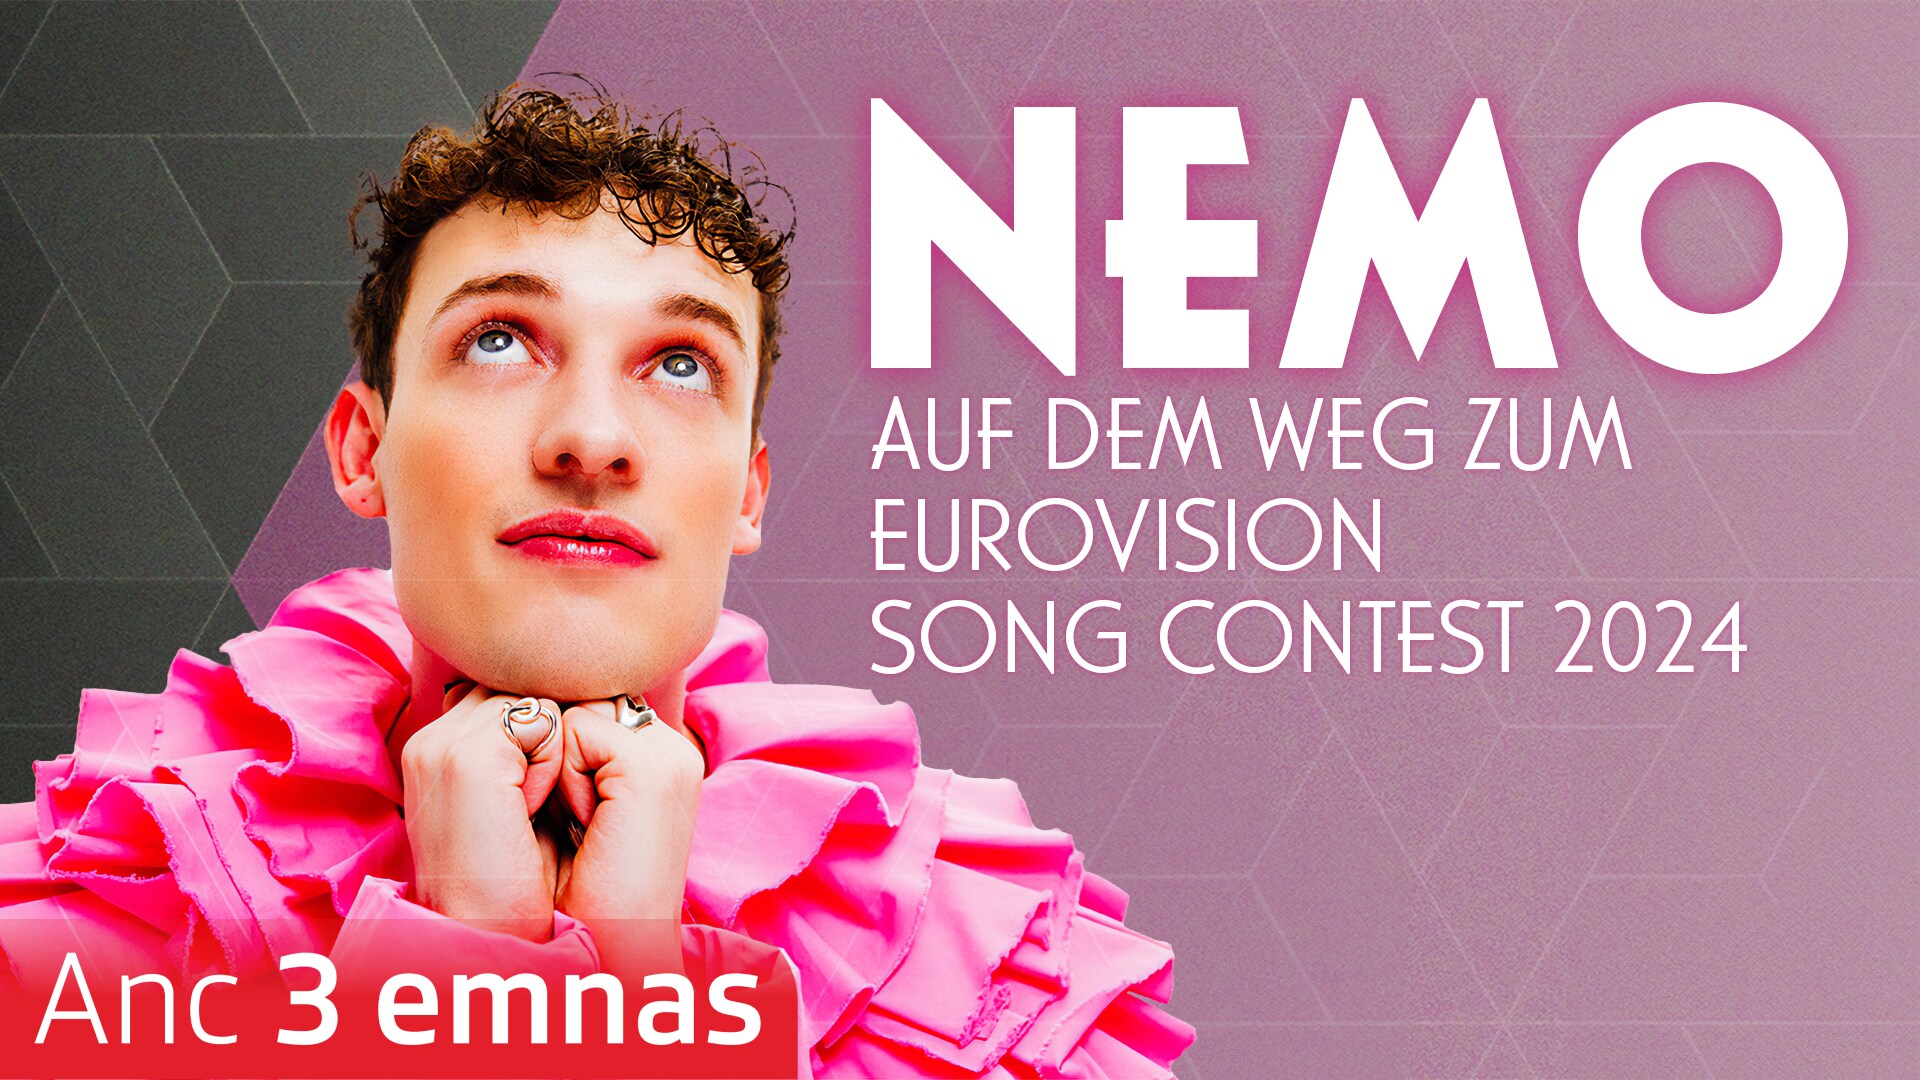 Nemo - Auf dem Weg zum Eurovision Song Contest 2024